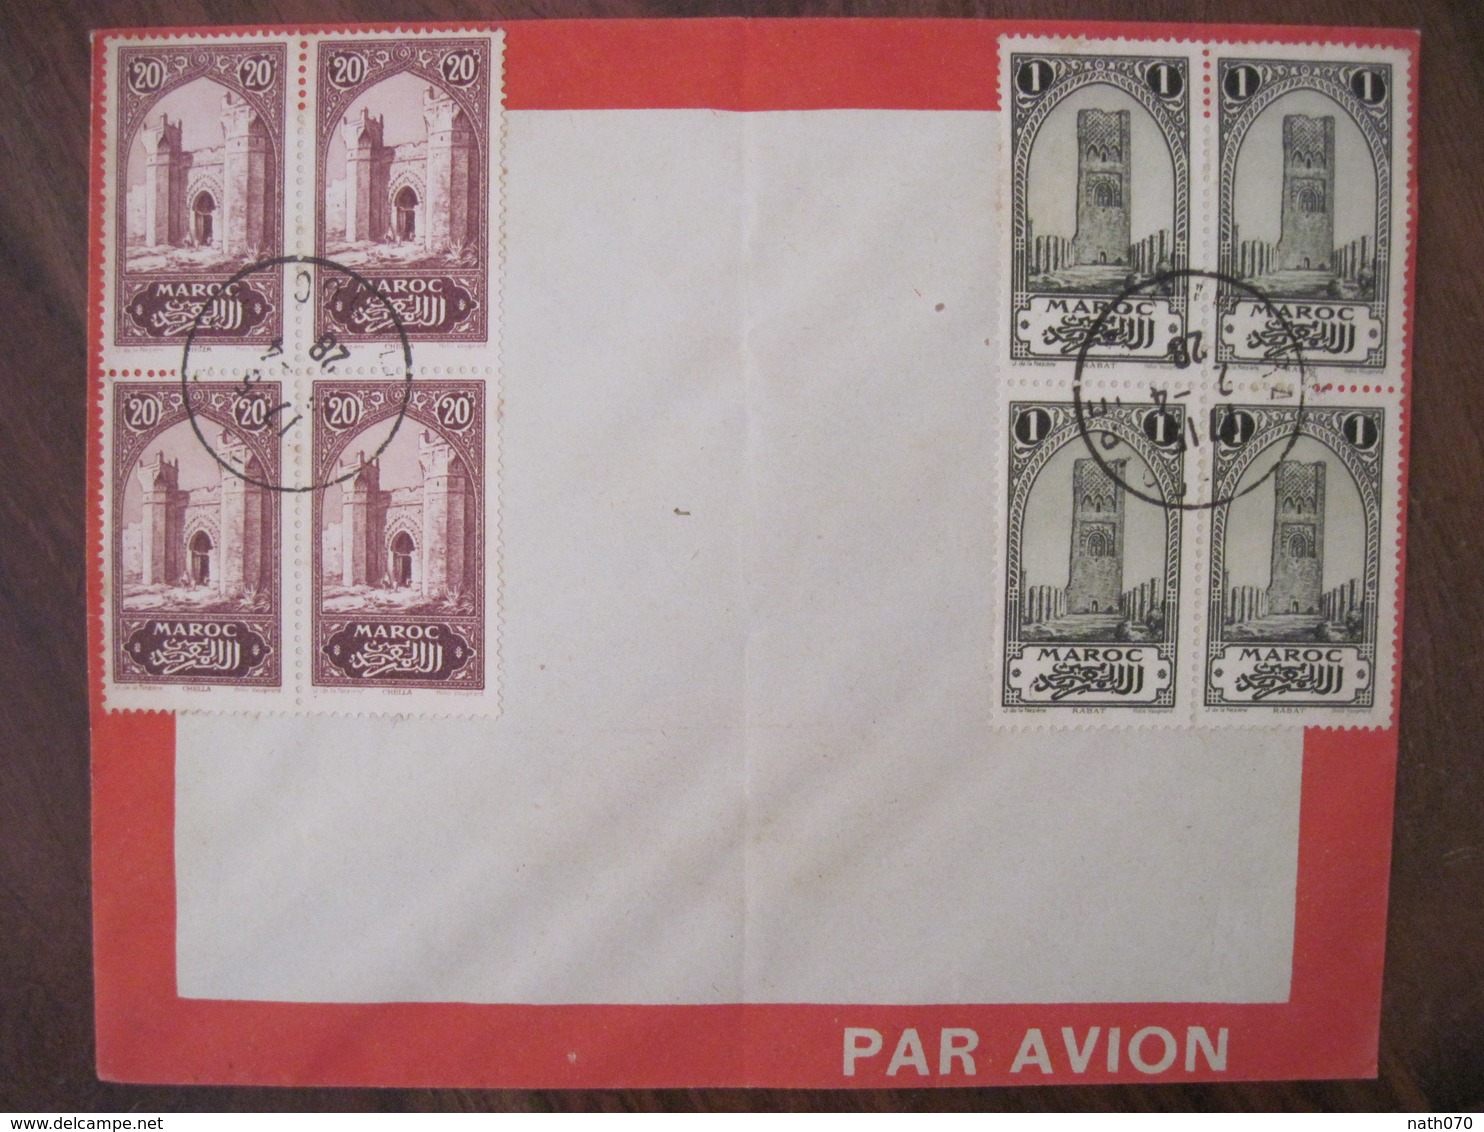 MAROC 1928 FRANCE Par Avion Lettre Enveloppe Cover Air Mail Colonie Bloc X 2 Ligne Senegal Algérie - Briefe U. Dokumente